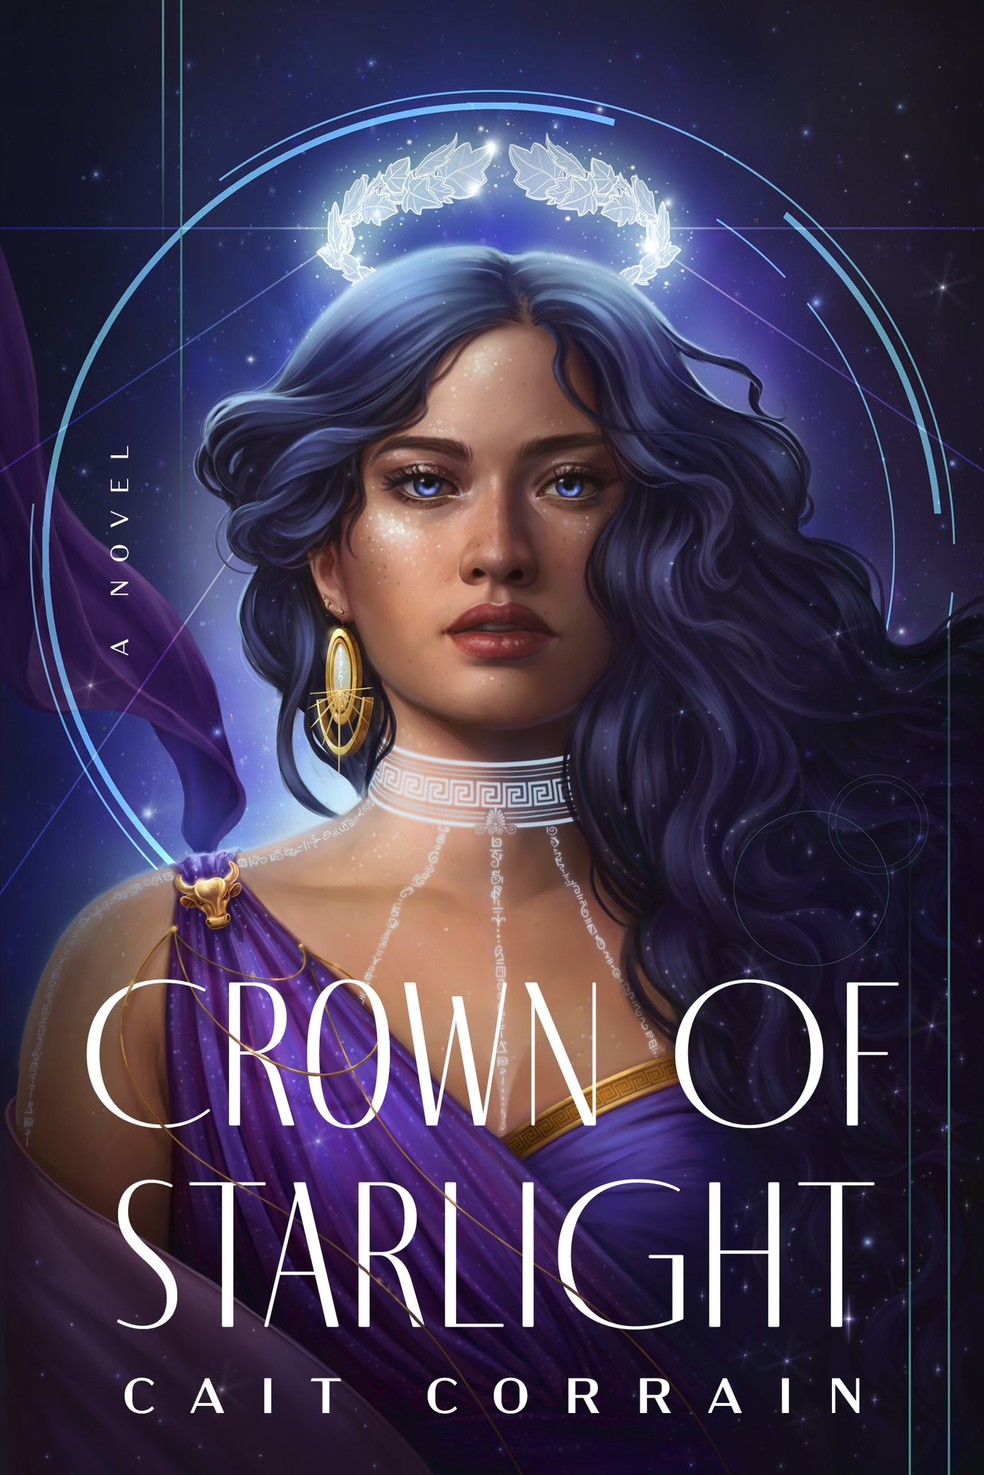 Capa do livro Crown of Starlight, que teve lançamento cancelado após polêmica — Foto: Reprodução